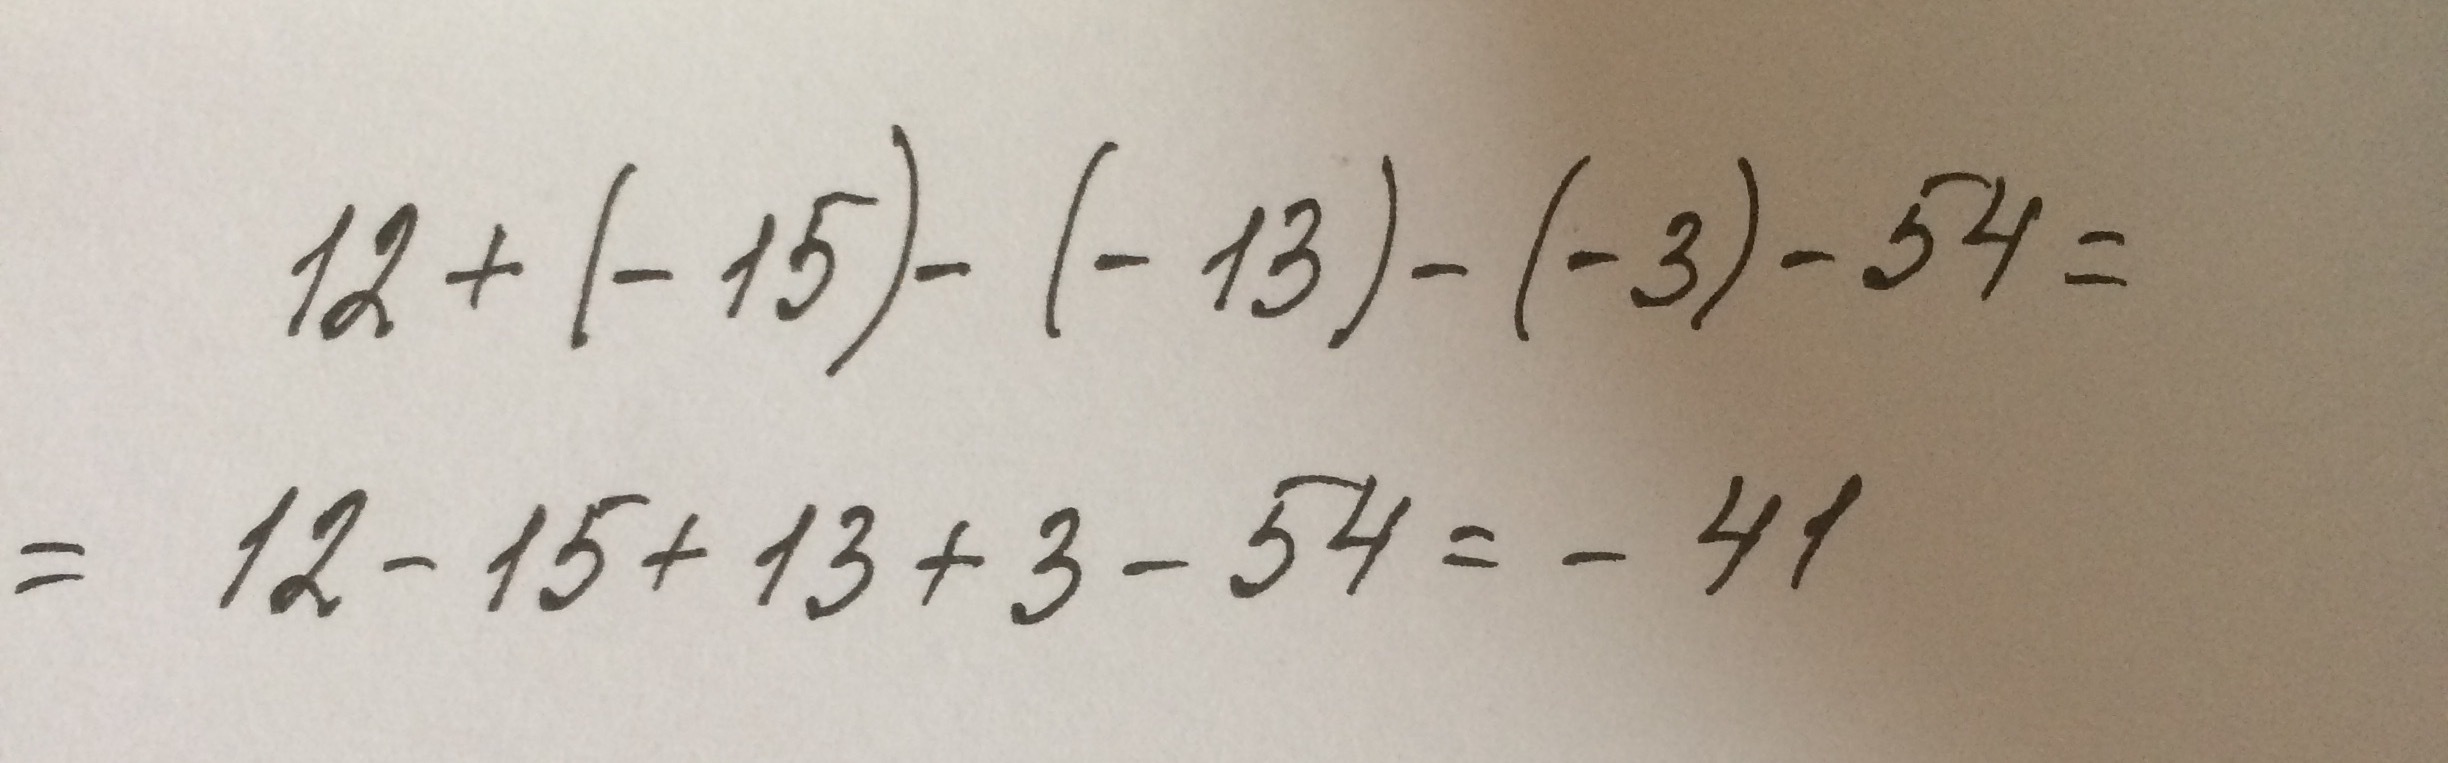 13 003. 12+(-15). 12+(-15)-(-13)-(-3)-54. Найдите значение выражения 15!/13!. Решить 3-(+54).